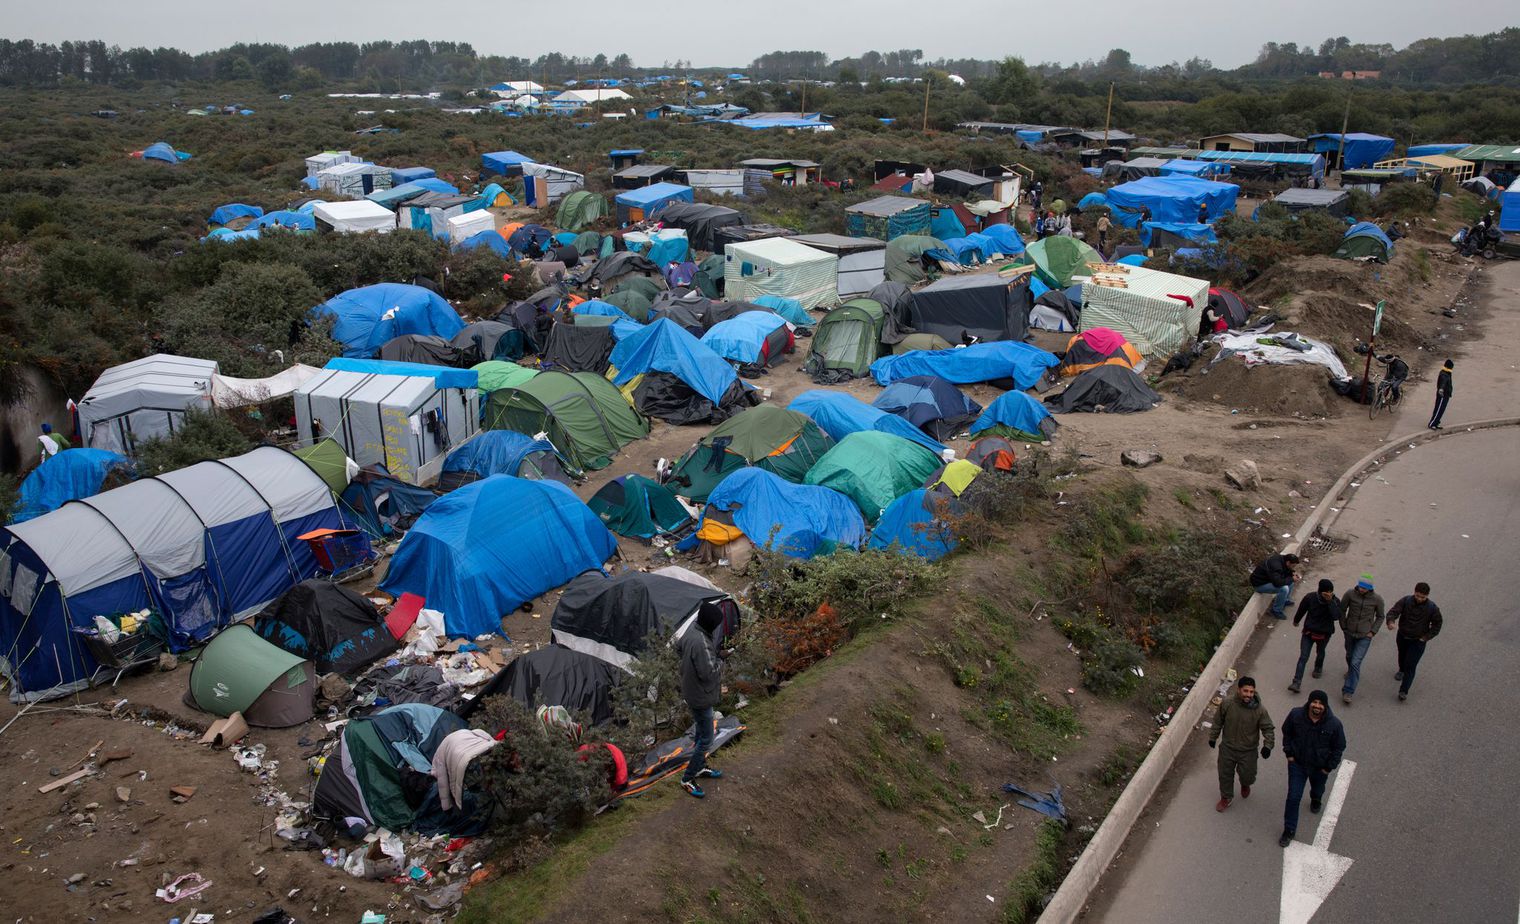 jungle-de-calais-migrants-migrants-walk-past-tents-in-the-new-jungle-make-shift-camp-in-calais_5461950.jpg